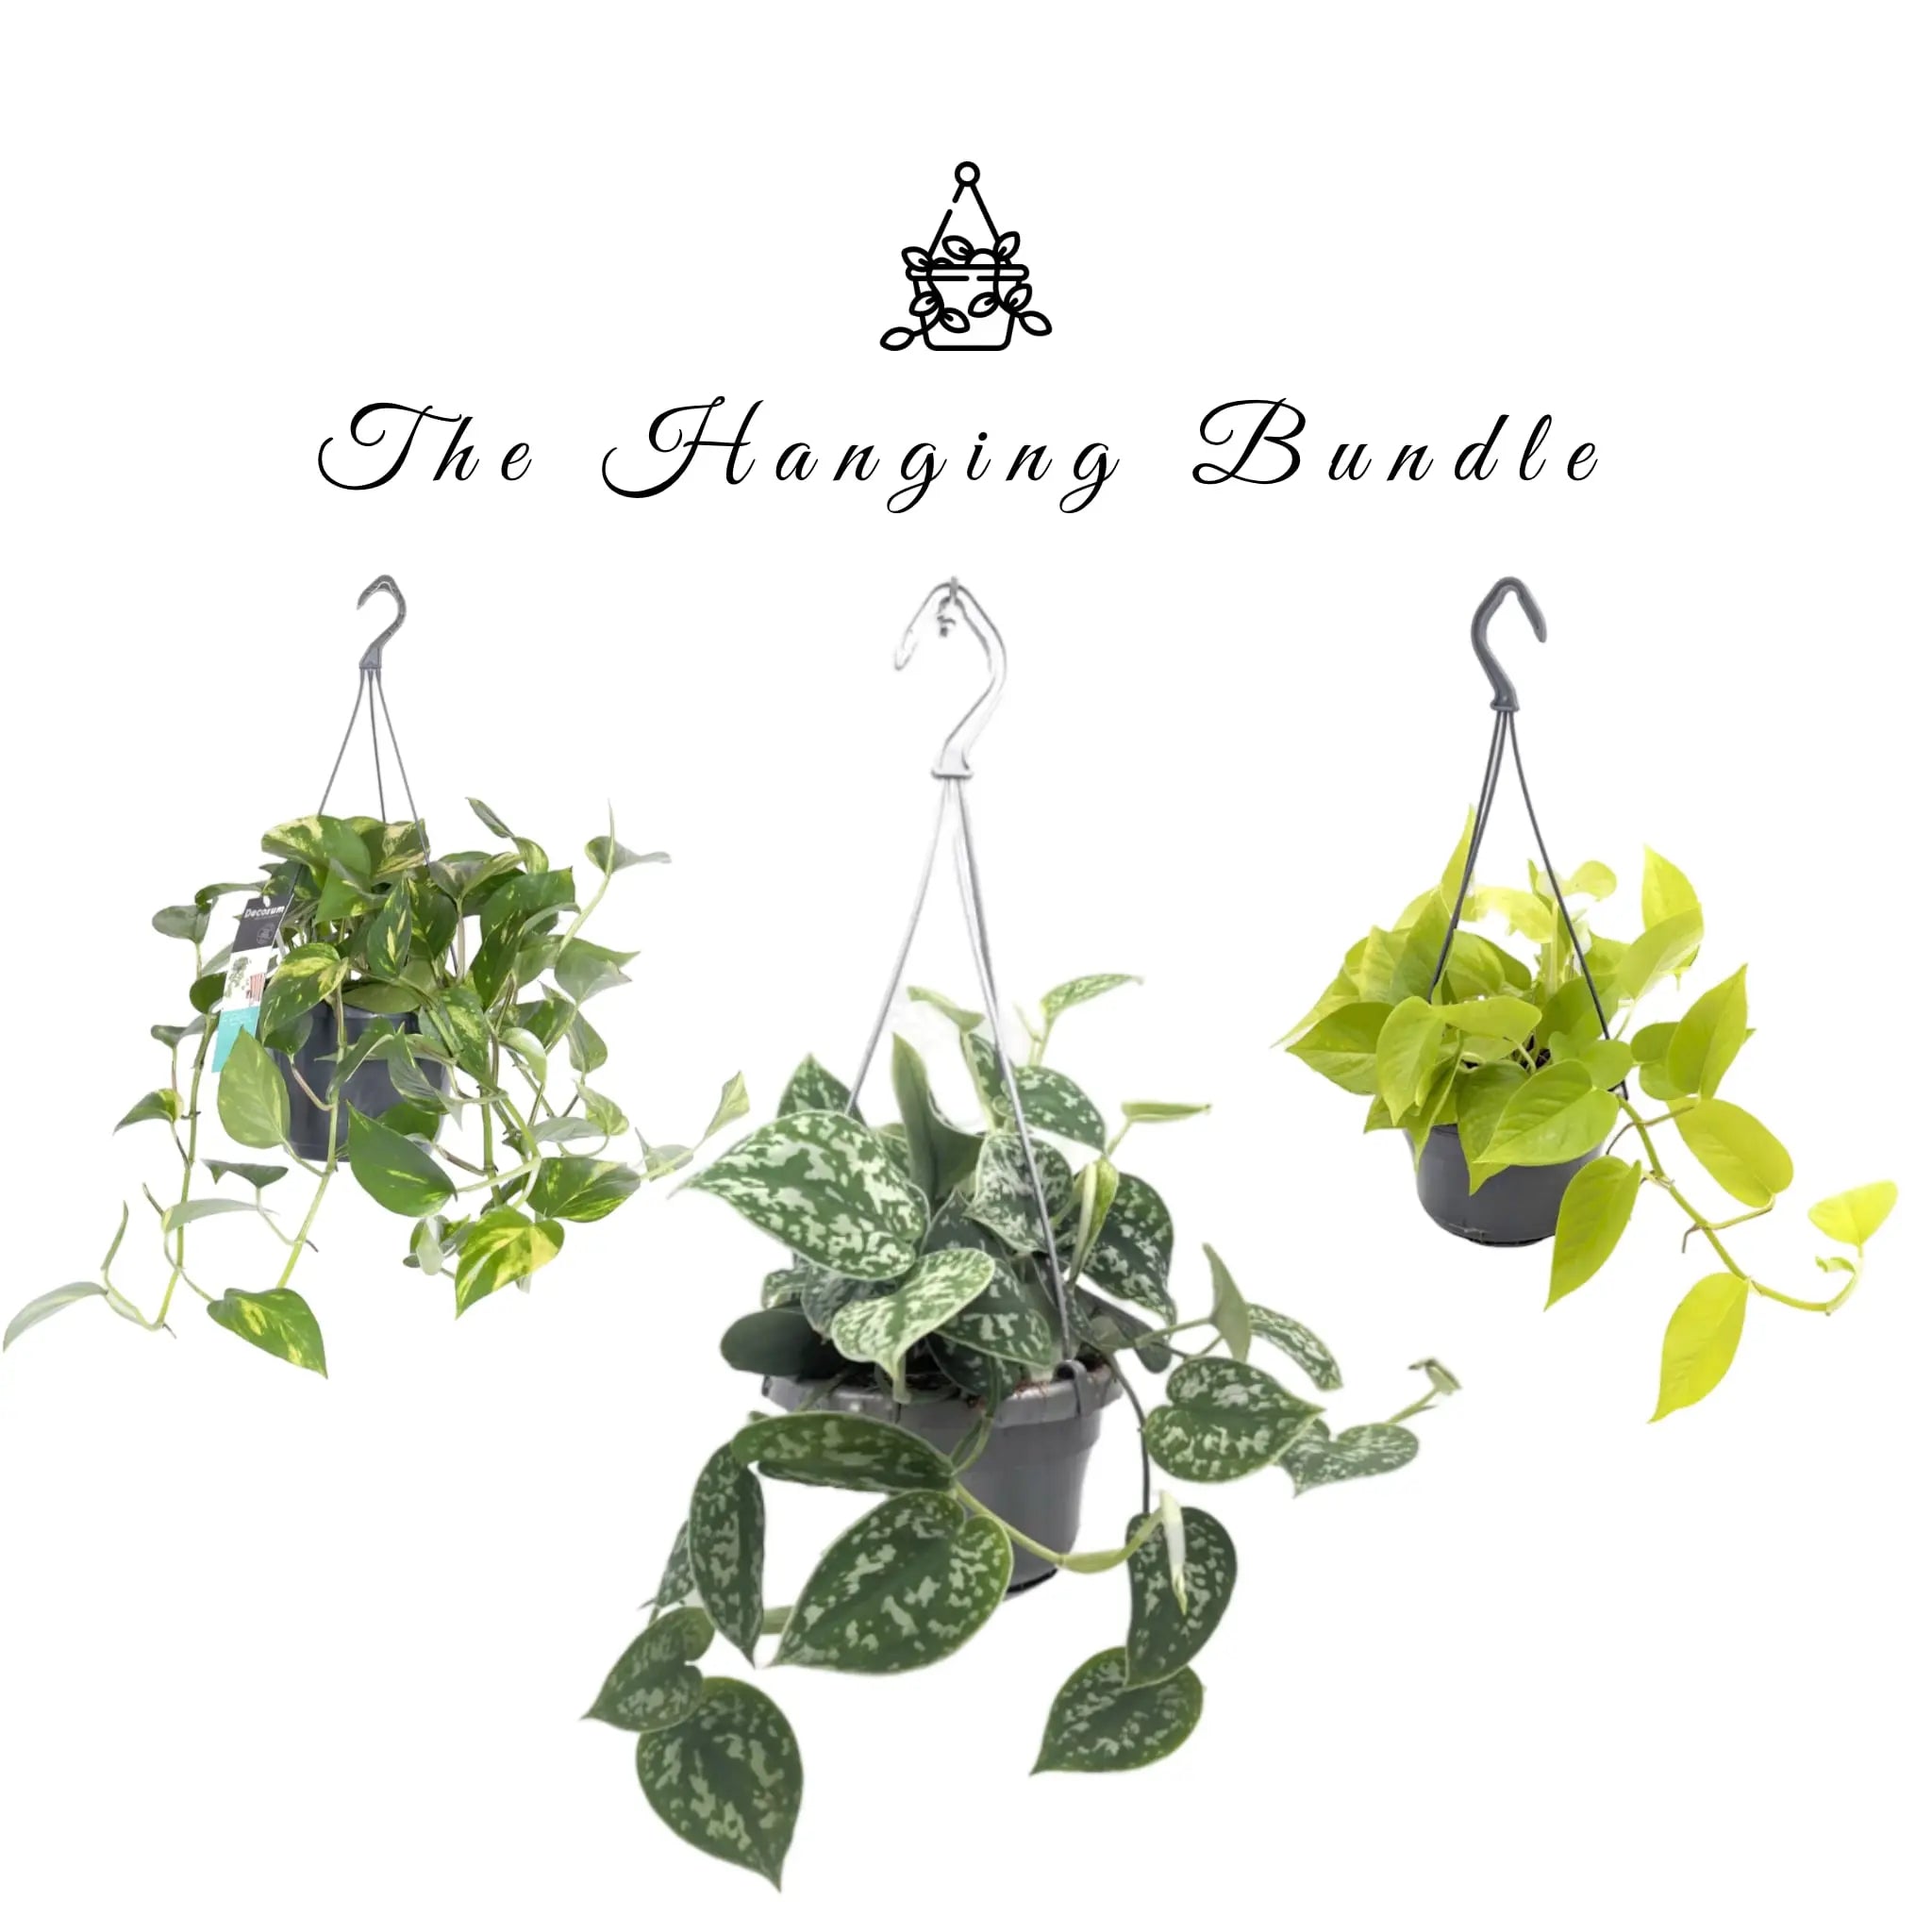 The Hanging Bundle Leaf Culture